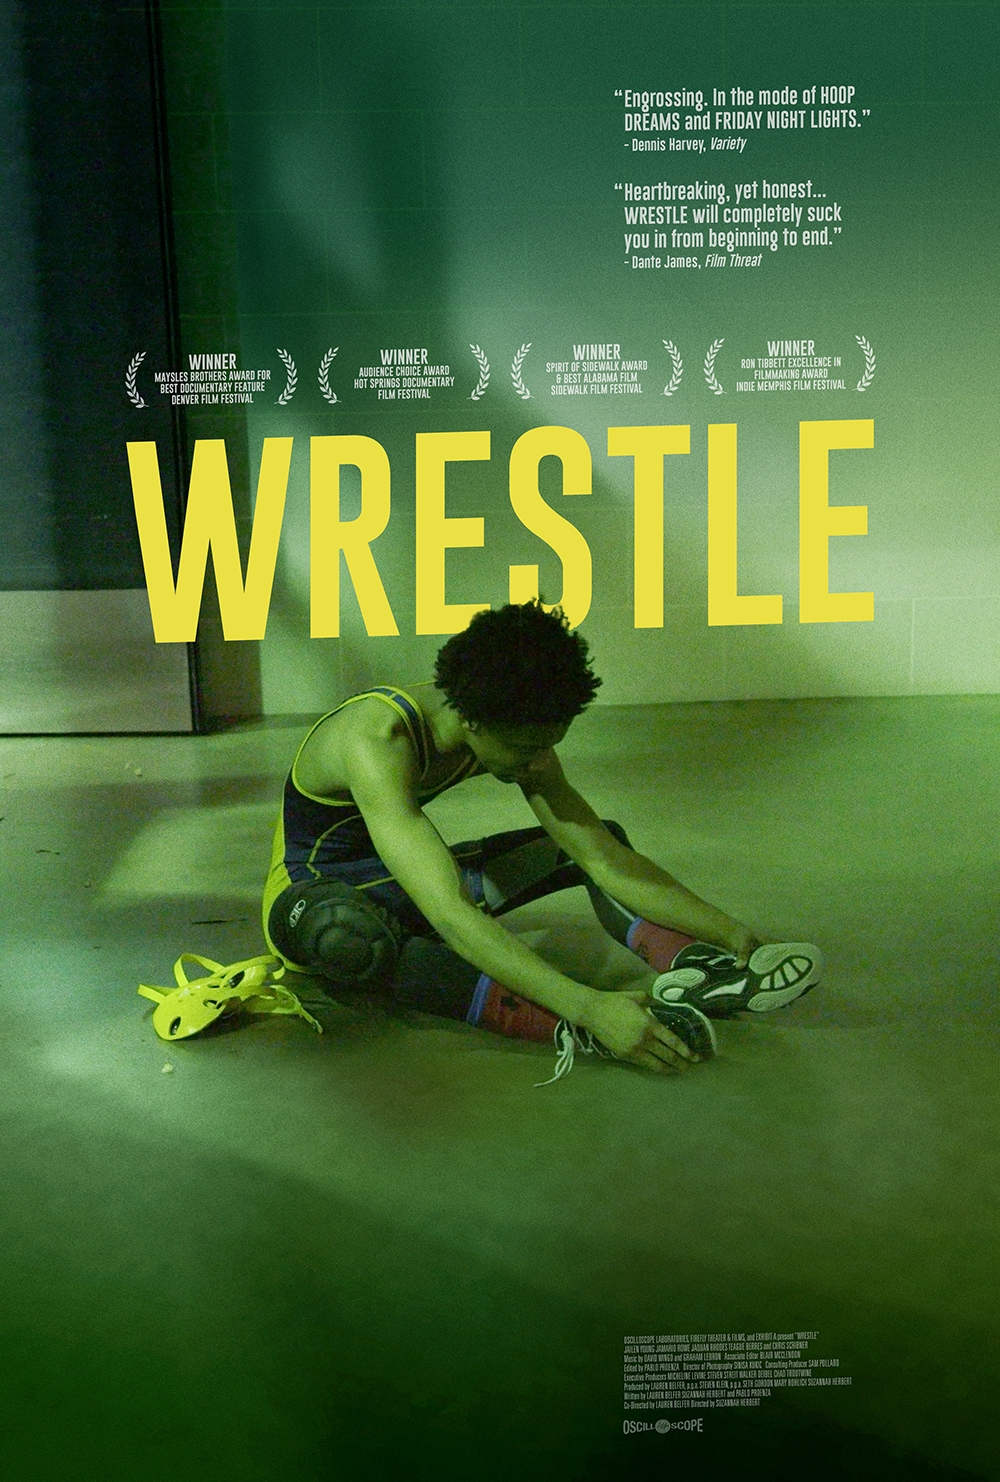 Film Poster - Wrestle